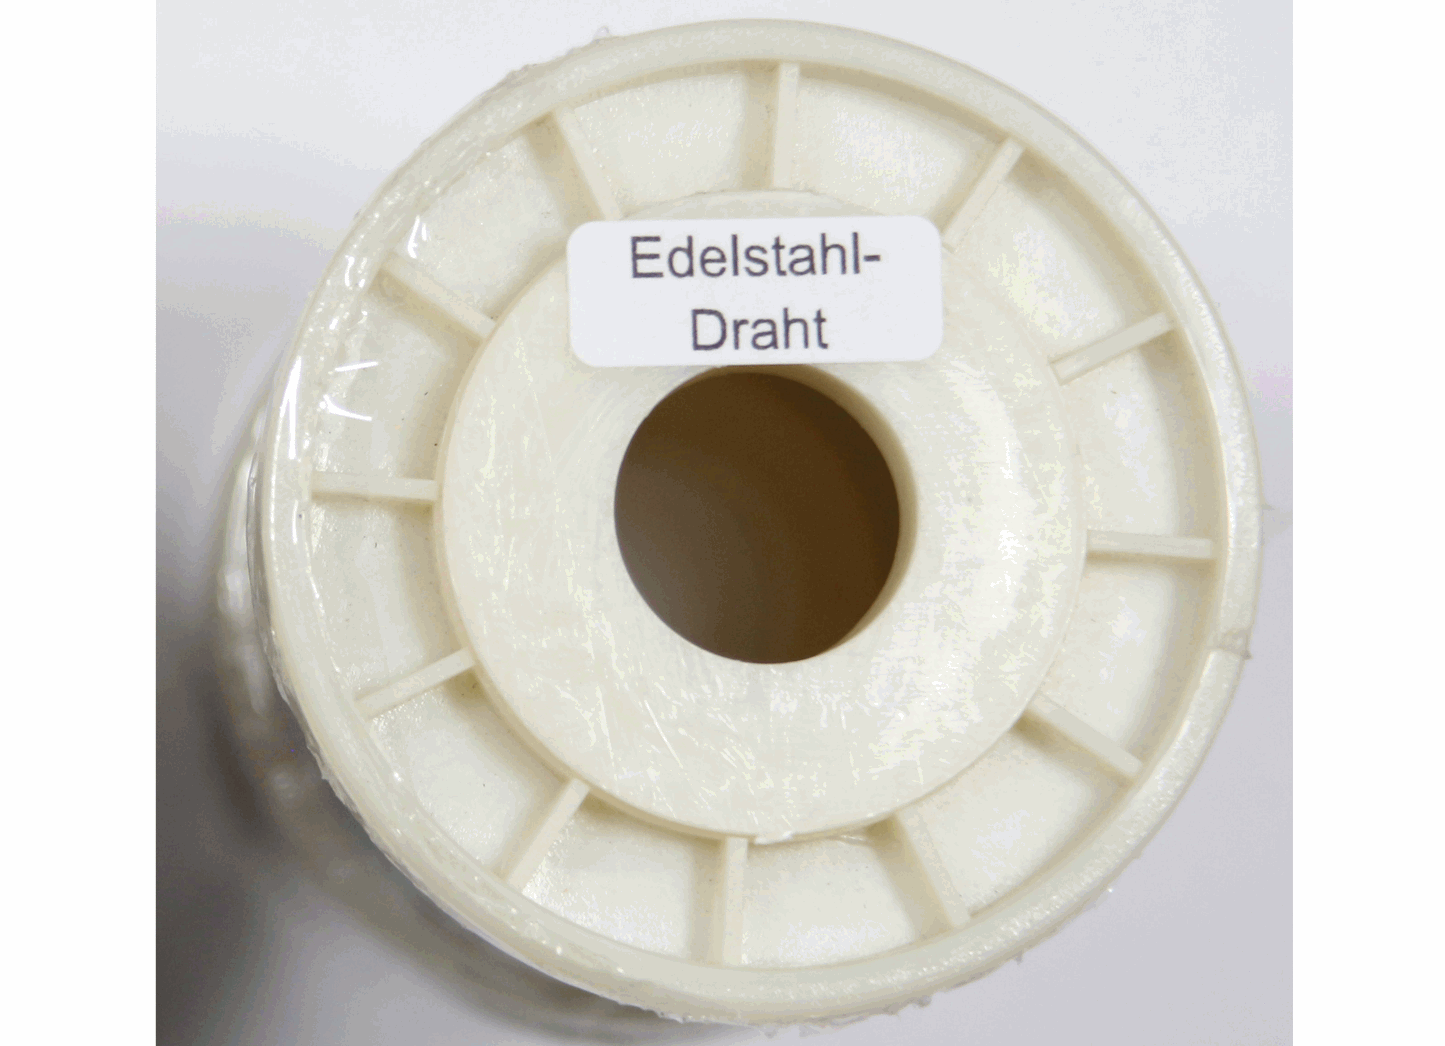 Edelstahl-Wabendraht Ø 0,4 mm  250 g / 500 g zum Verdrahten von Wabenrähmchen